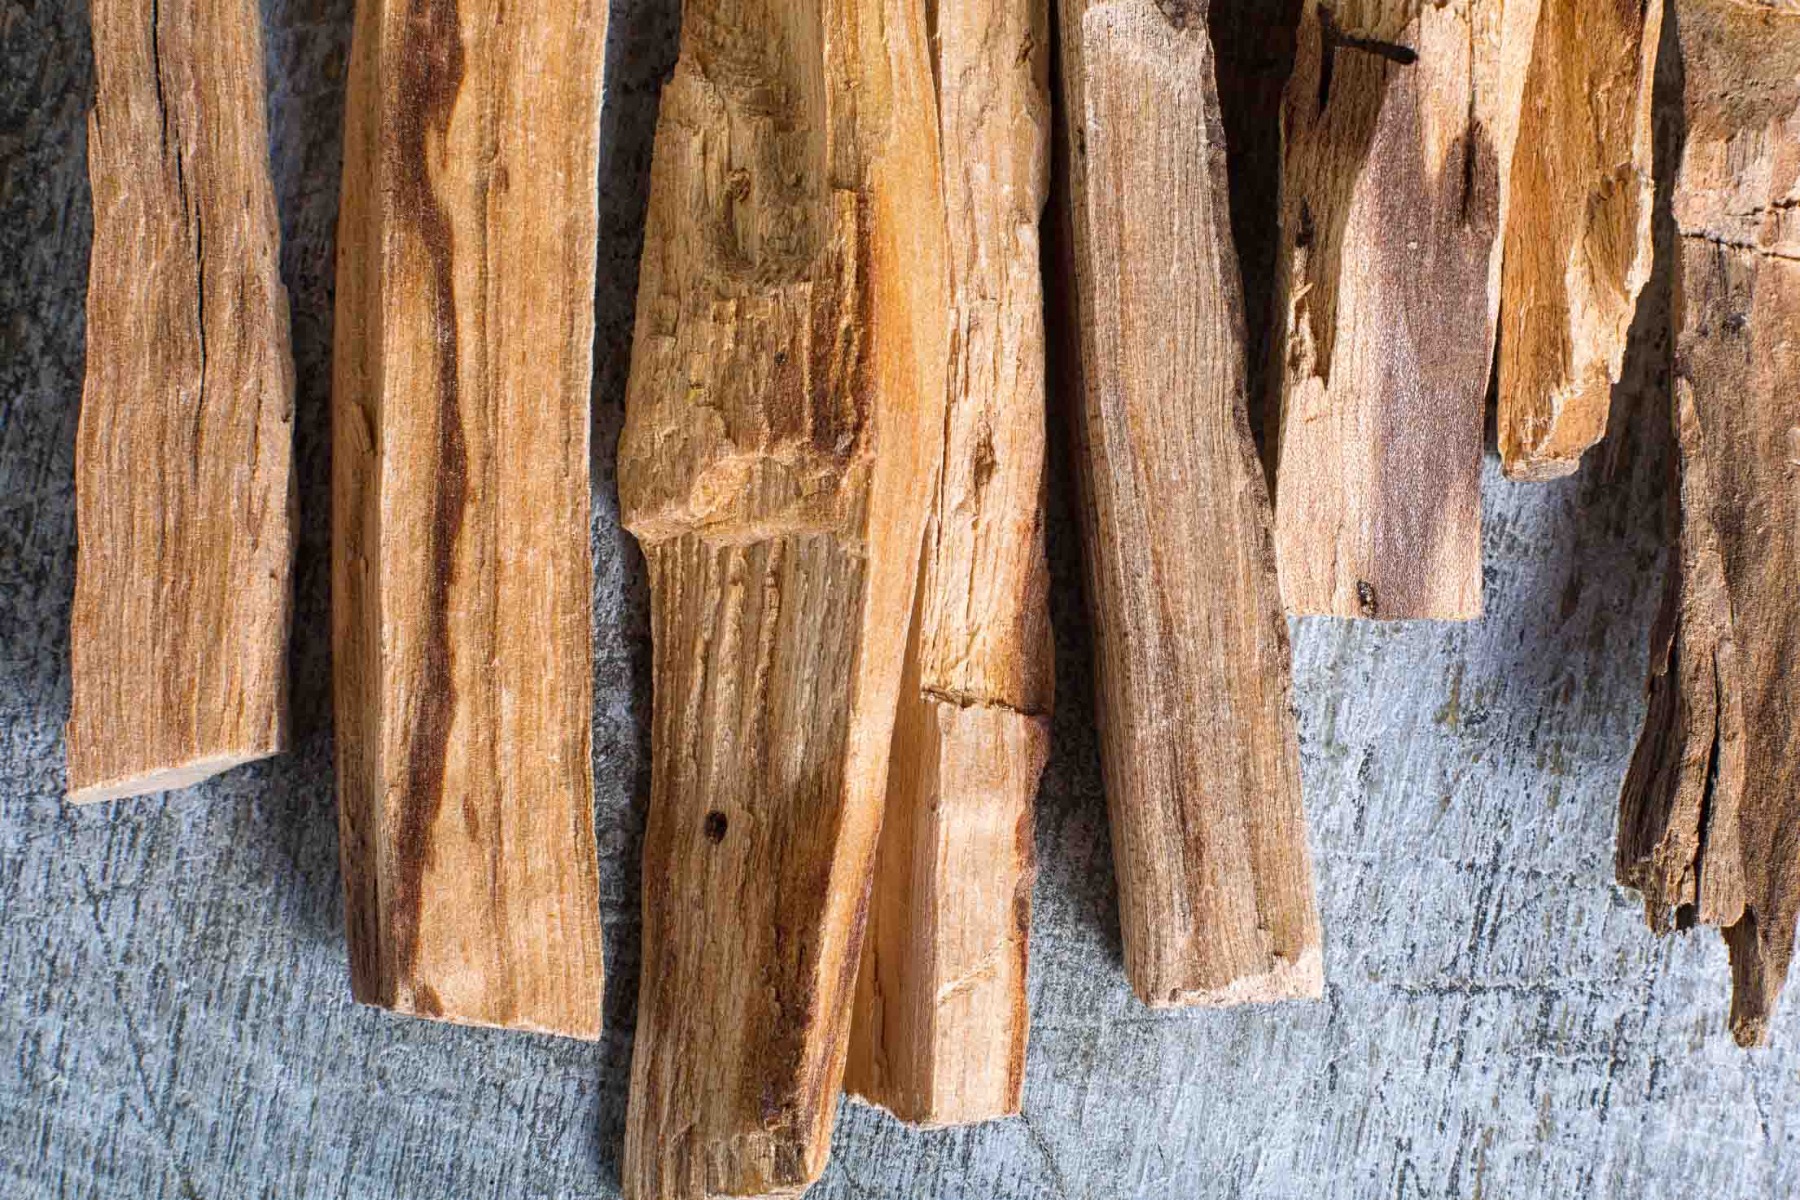 palo santo wood essential oil